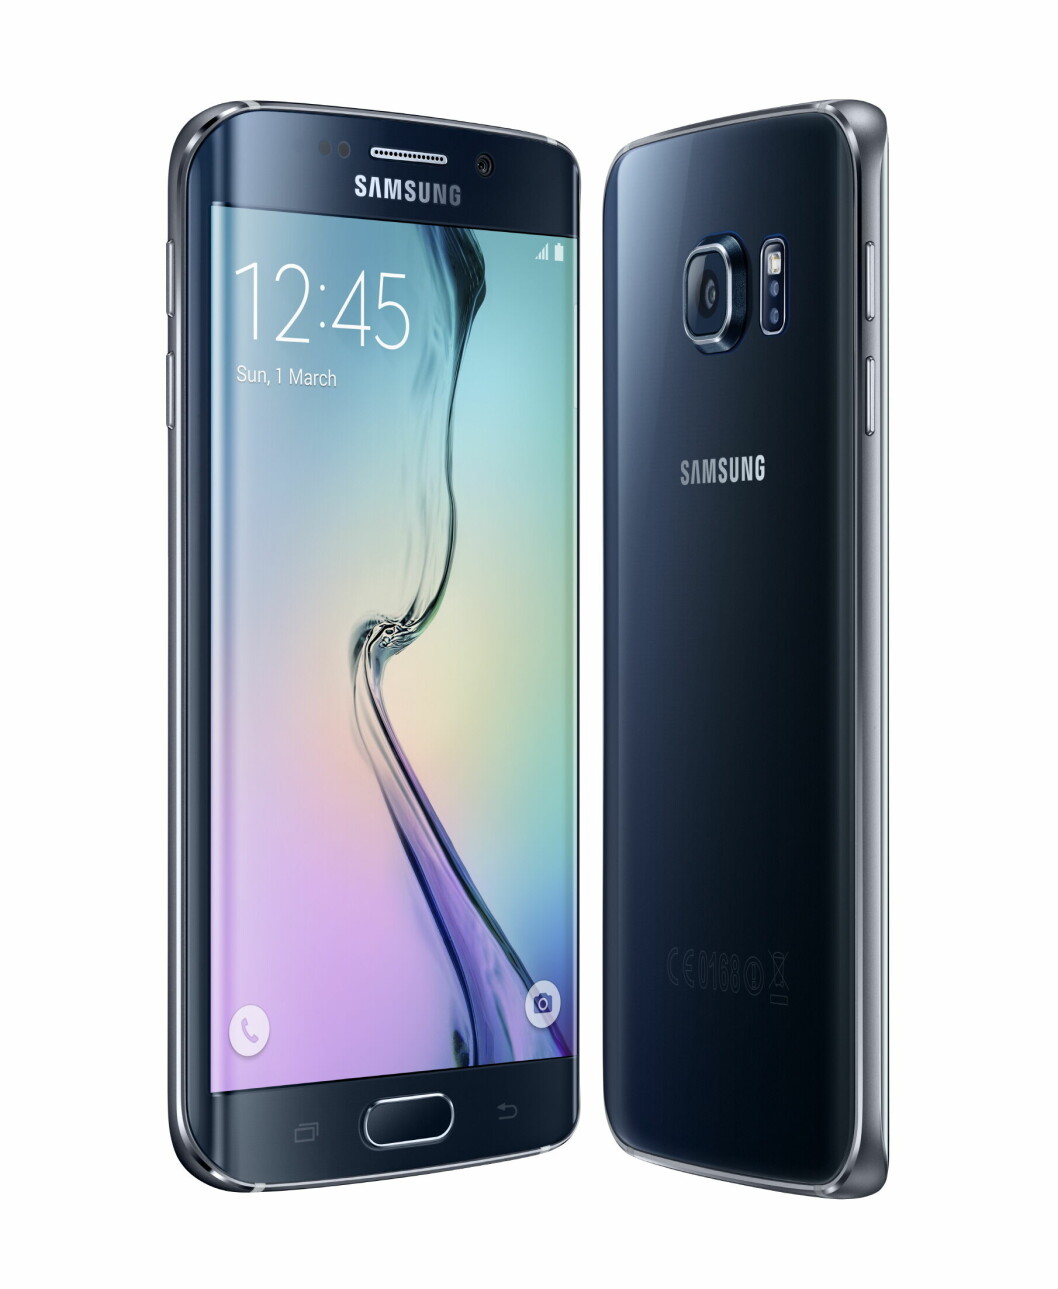 KURVER NED: Buet skjerm er designtricks nummer 1 for Galaxy S6. Mangelen på skjermer drar resultatet ned for hele Samsung. Foto: Samsung.